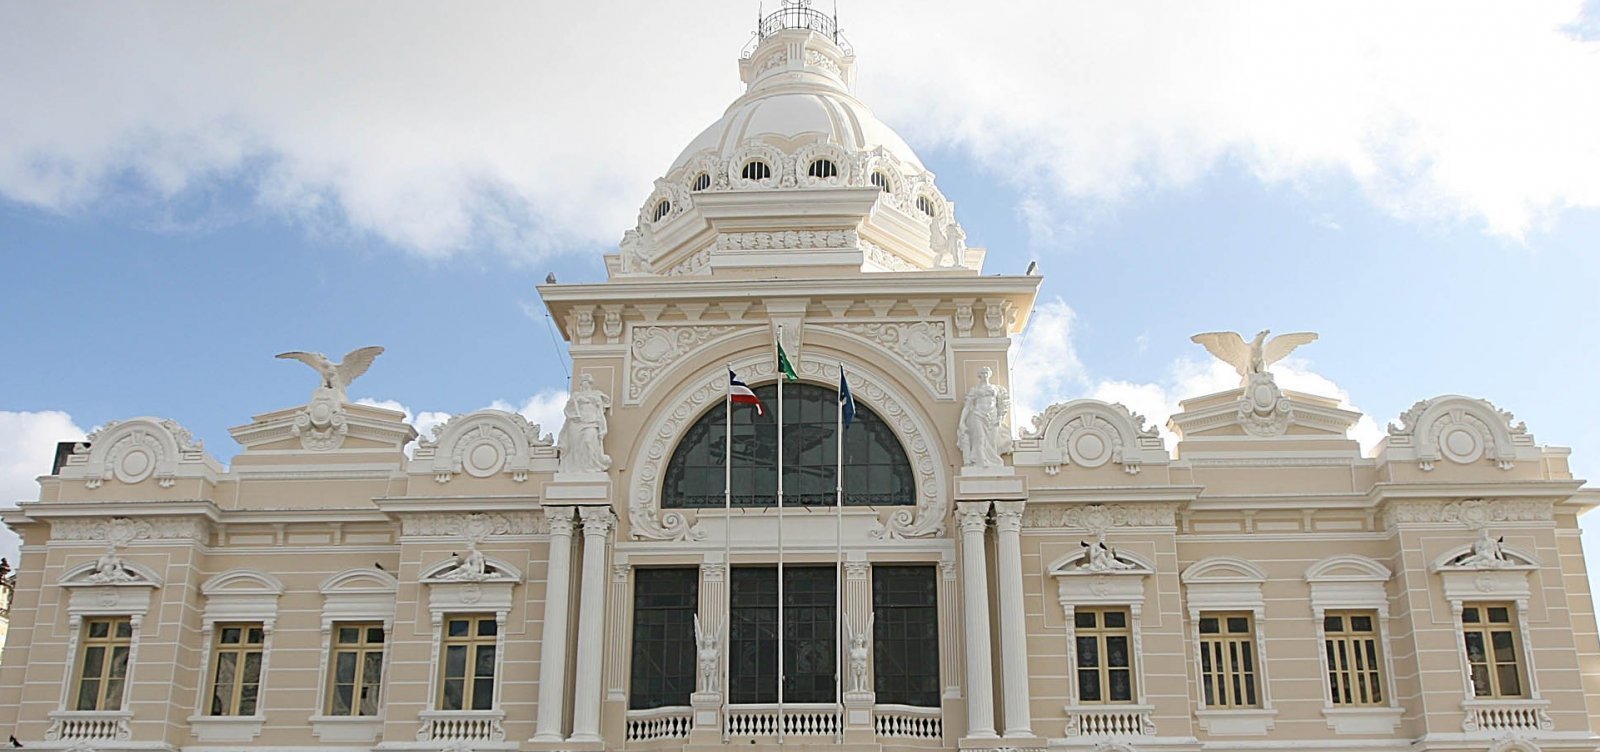 Vila Galé recebe autorização para projeto de construção de hotel no Palácio Rio Branco